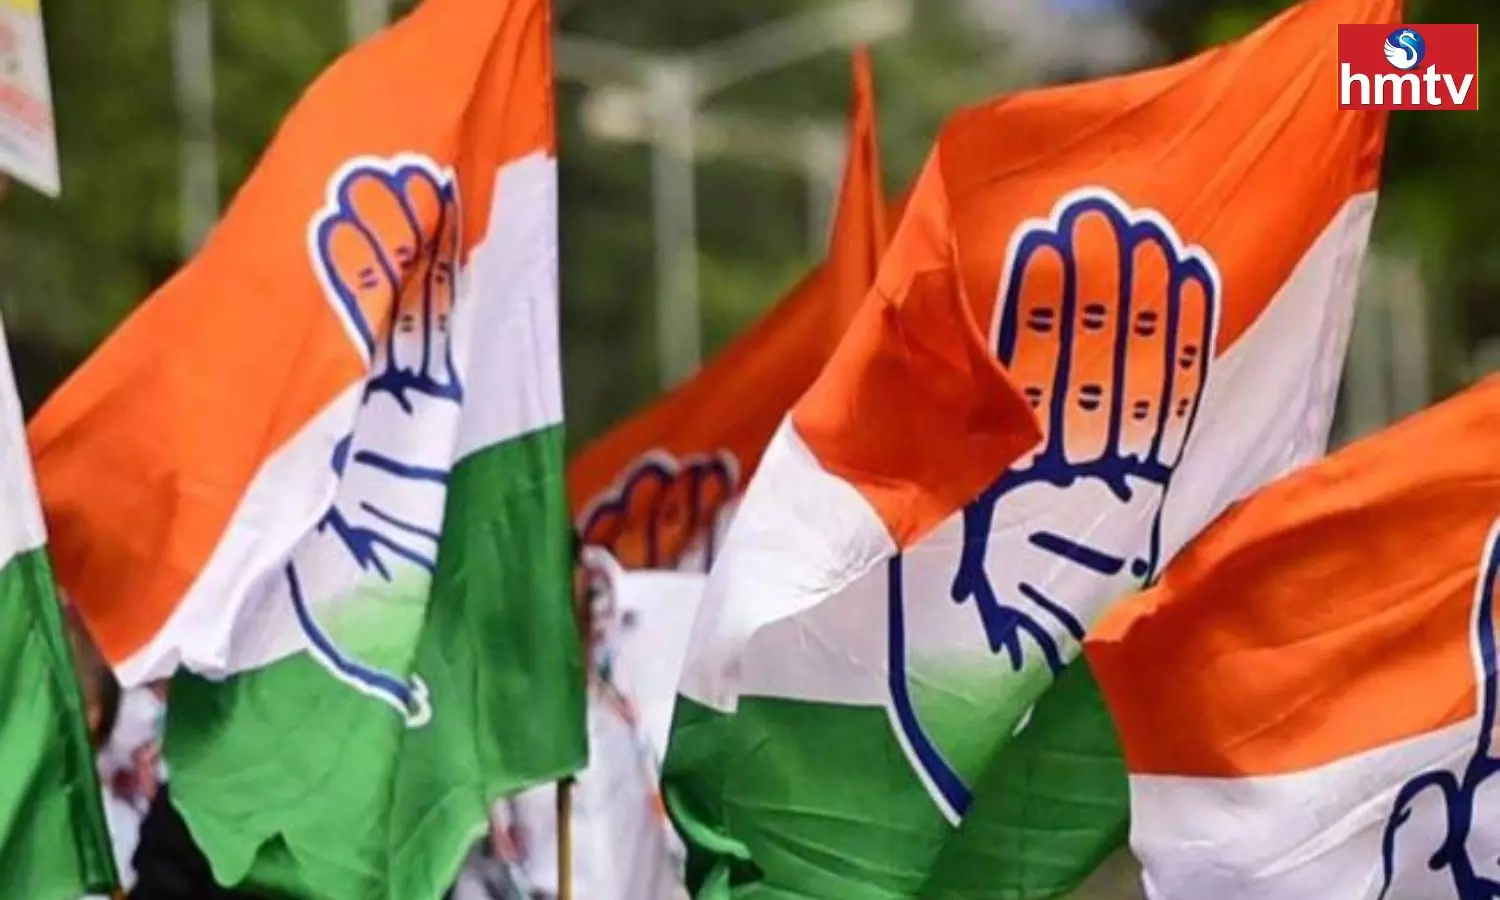 Congress sent legal notices to BJP leader NVSS Prabhakar